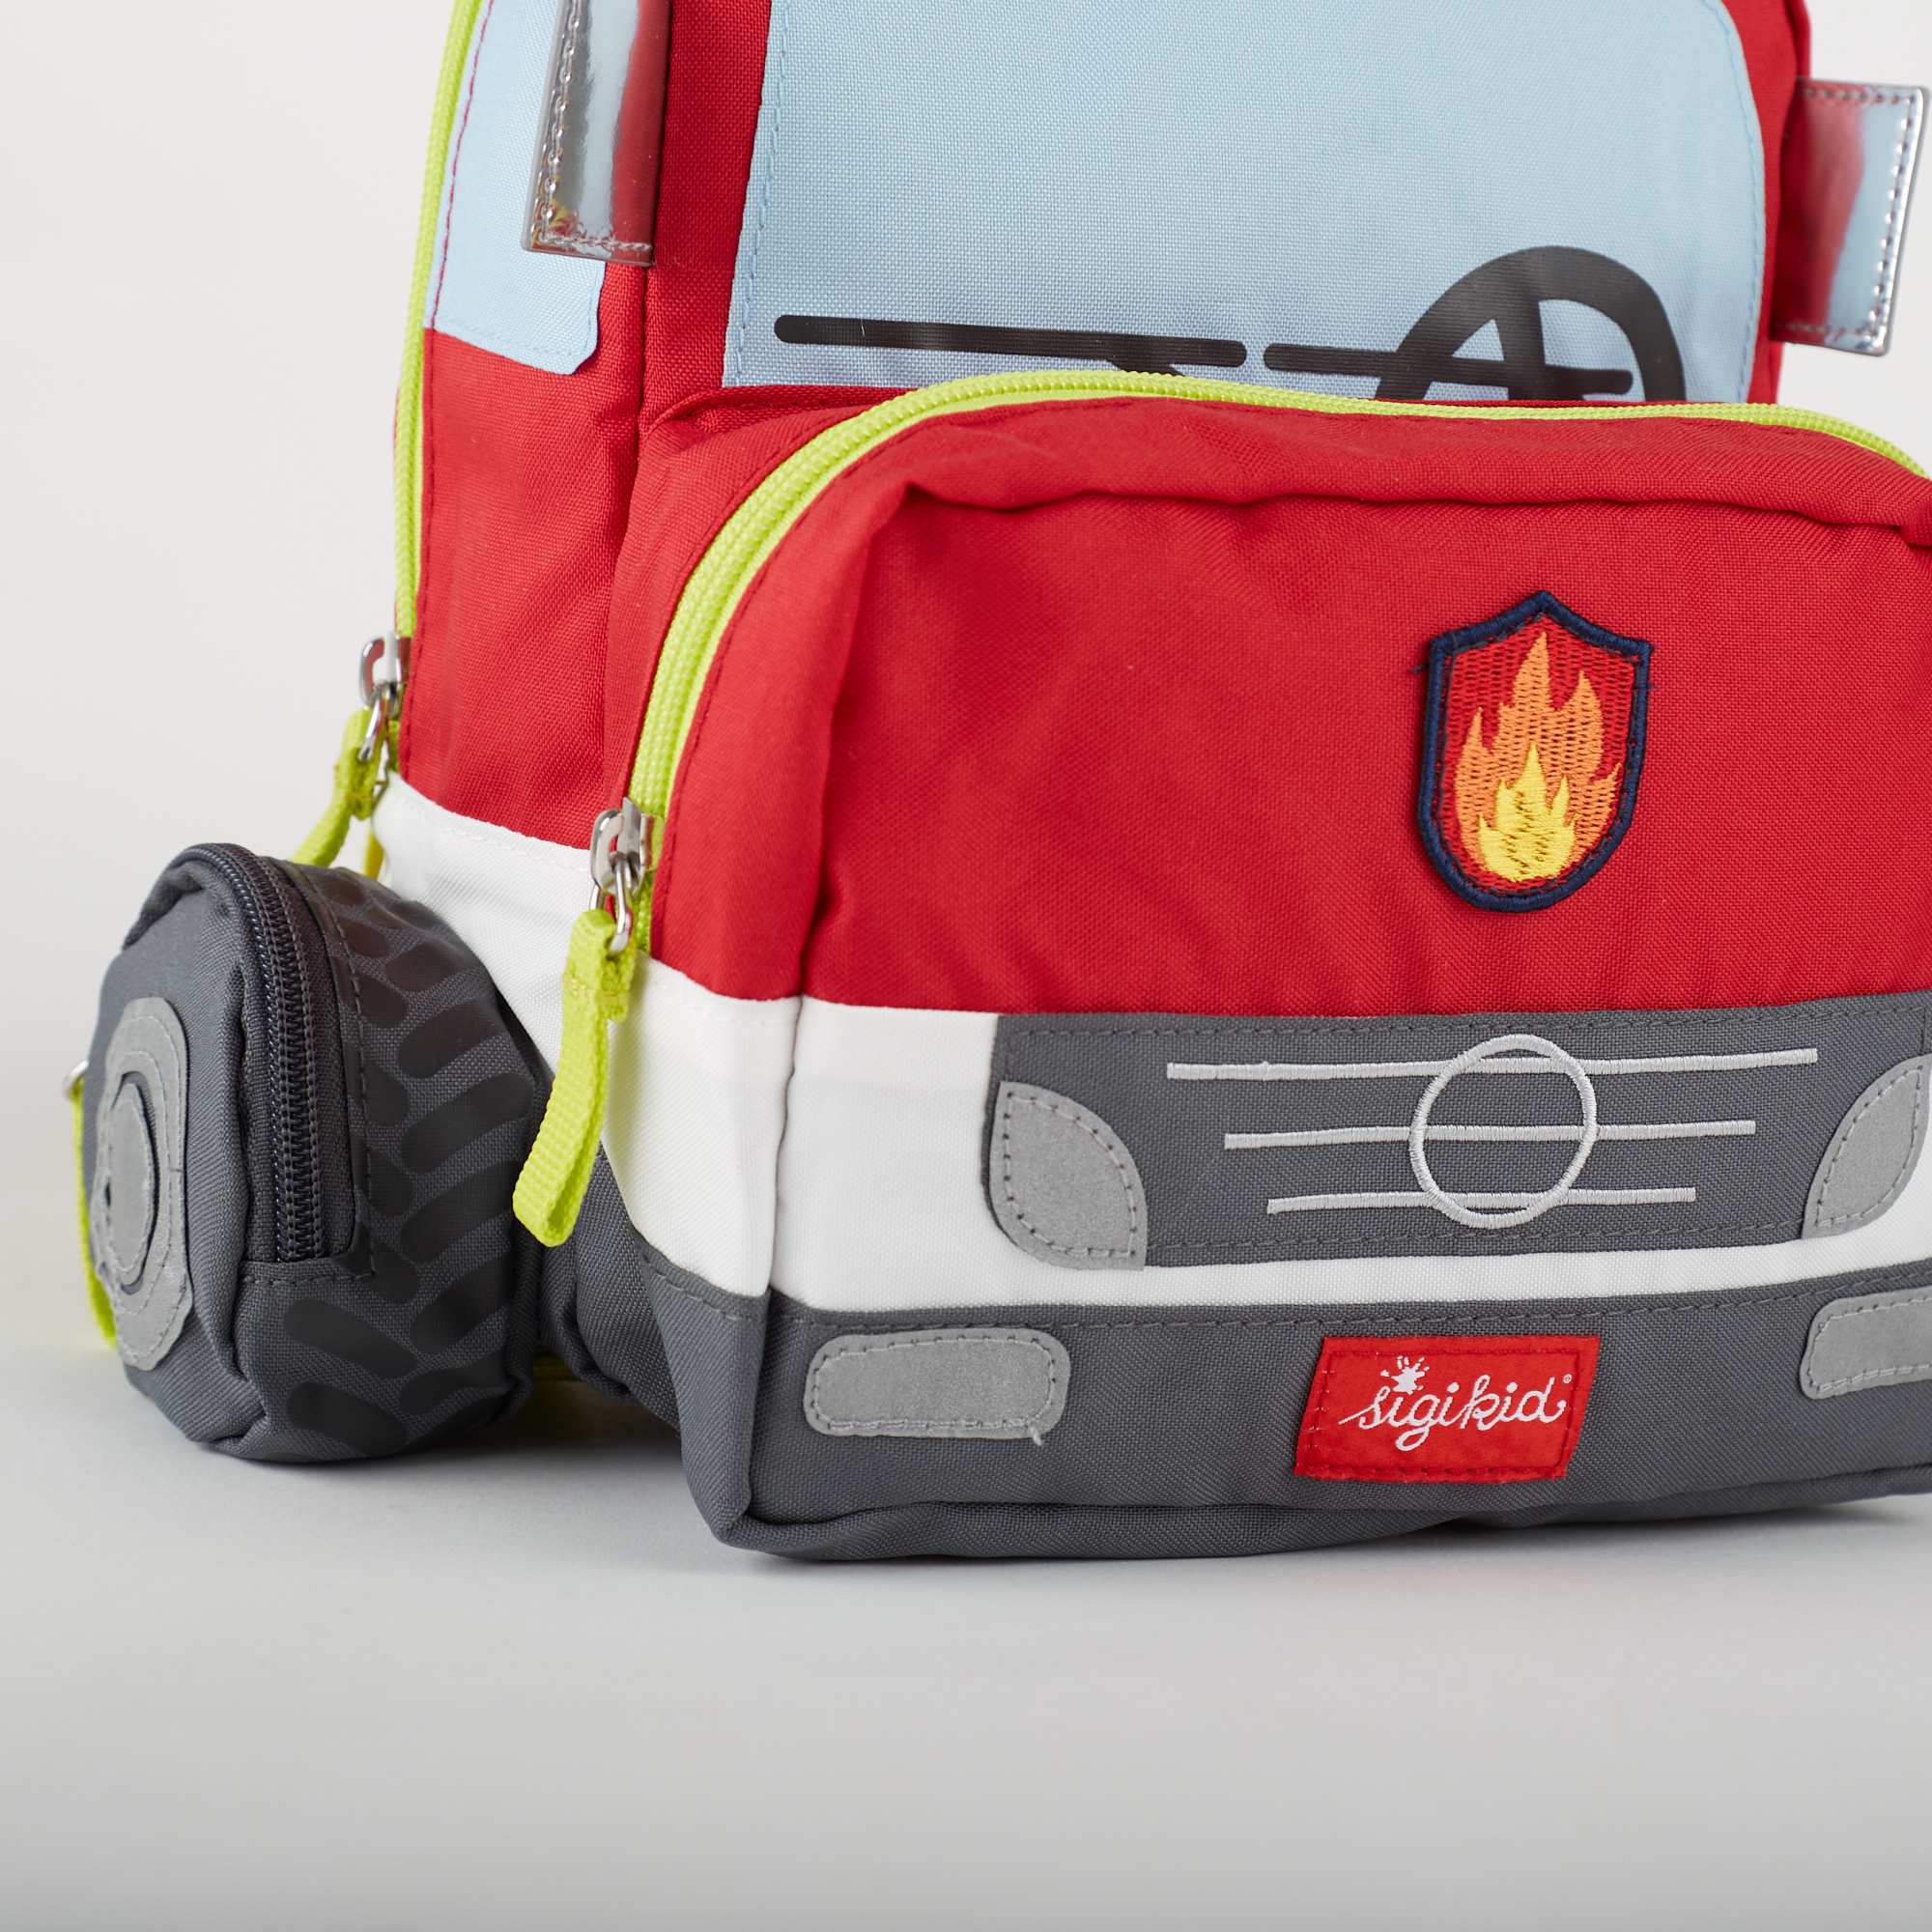 Kindergarden backpack fire truck